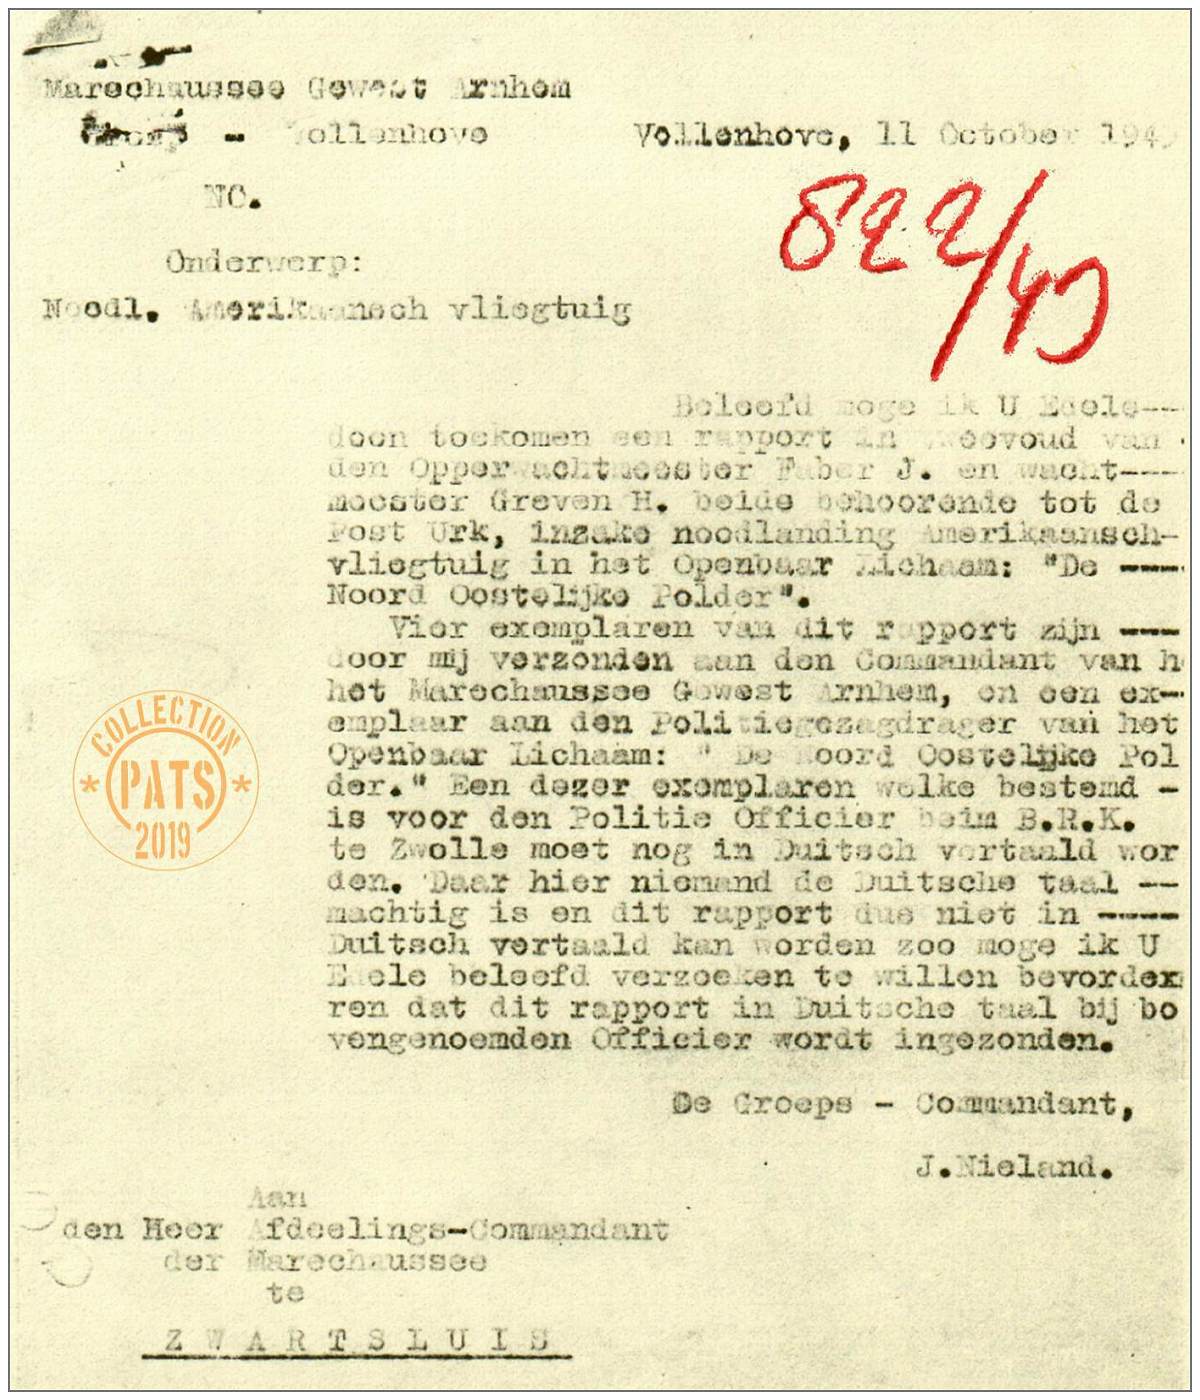 Marechaussee Gewest Arnhem, Groep Vollenhove - report No. 822/43 - 11 Oct 1943